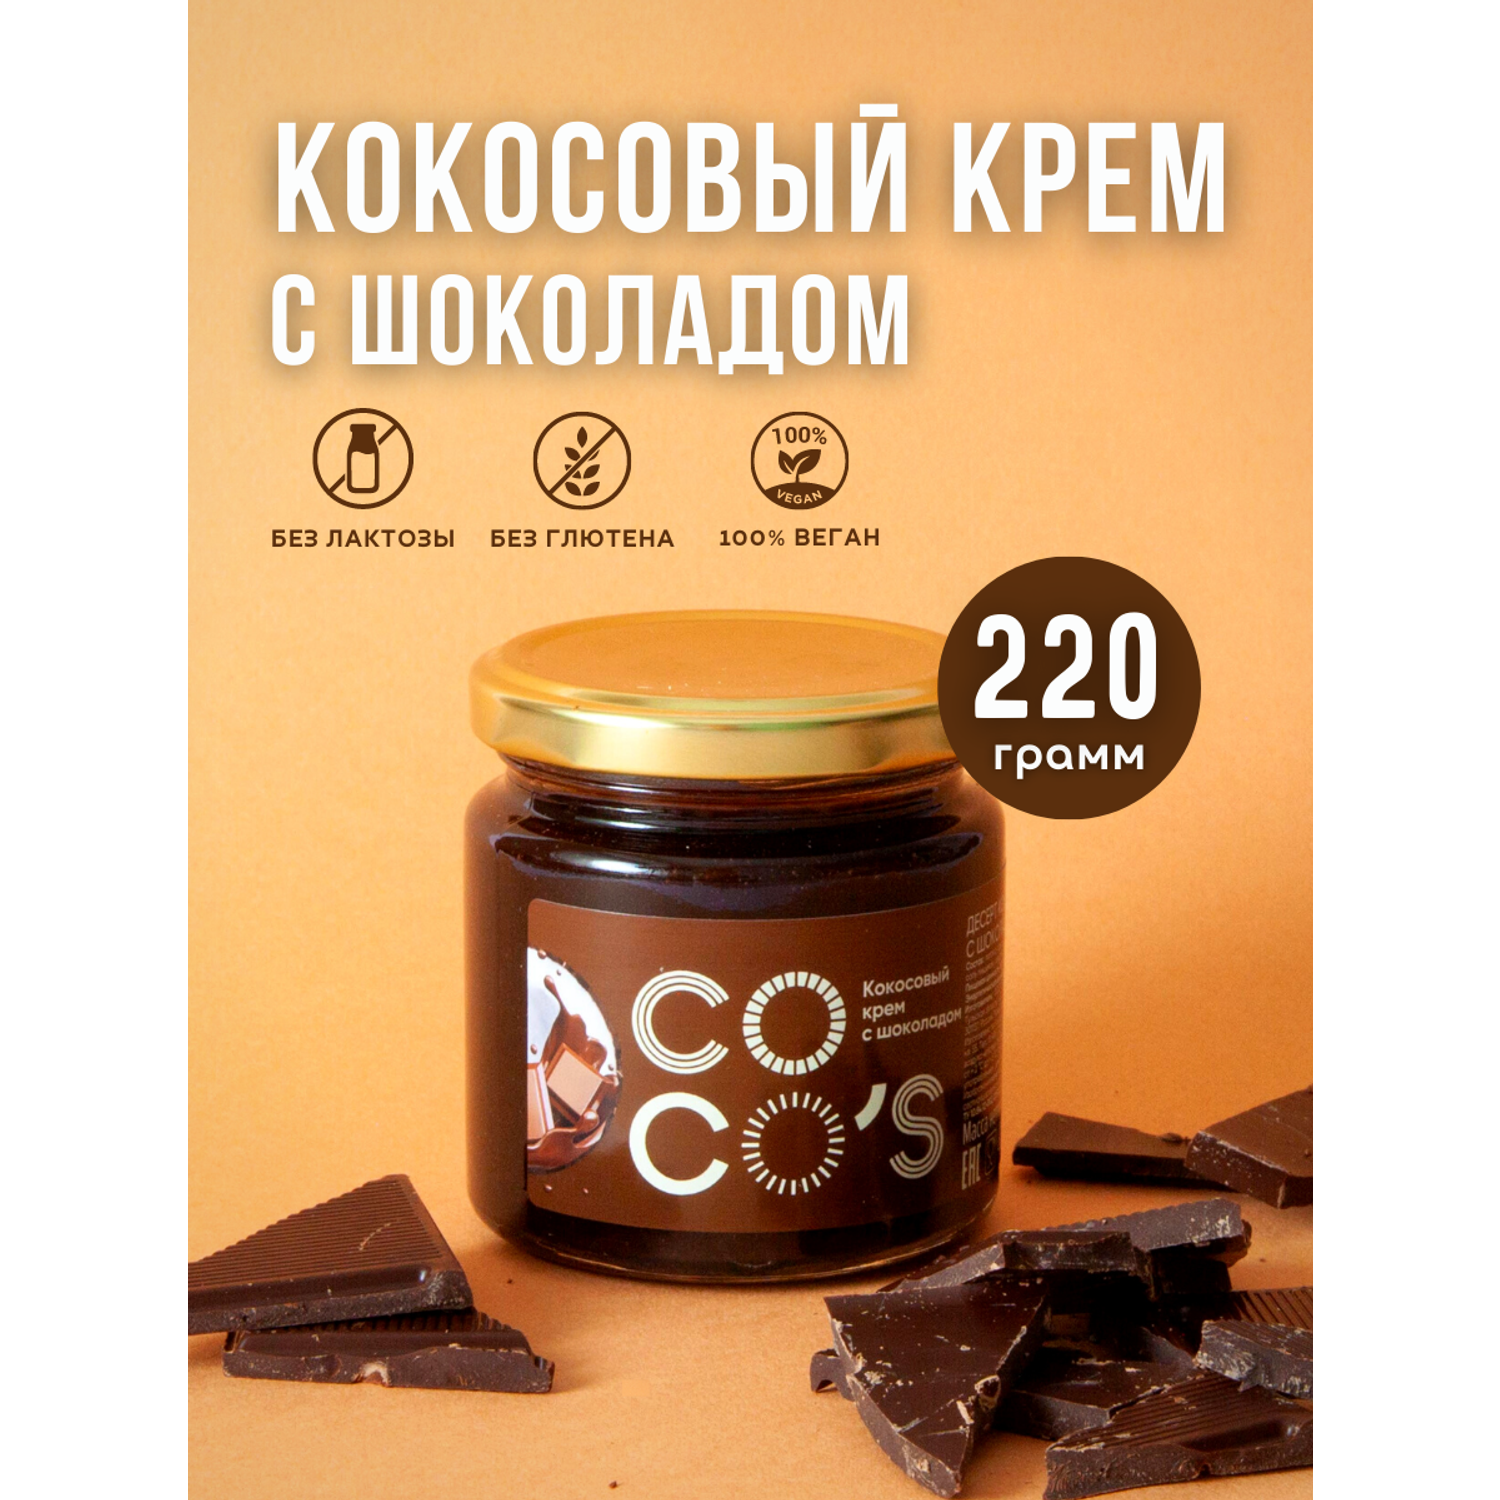 Кокосовая паста без глютена Cocos cream с шоколадом - фото 2